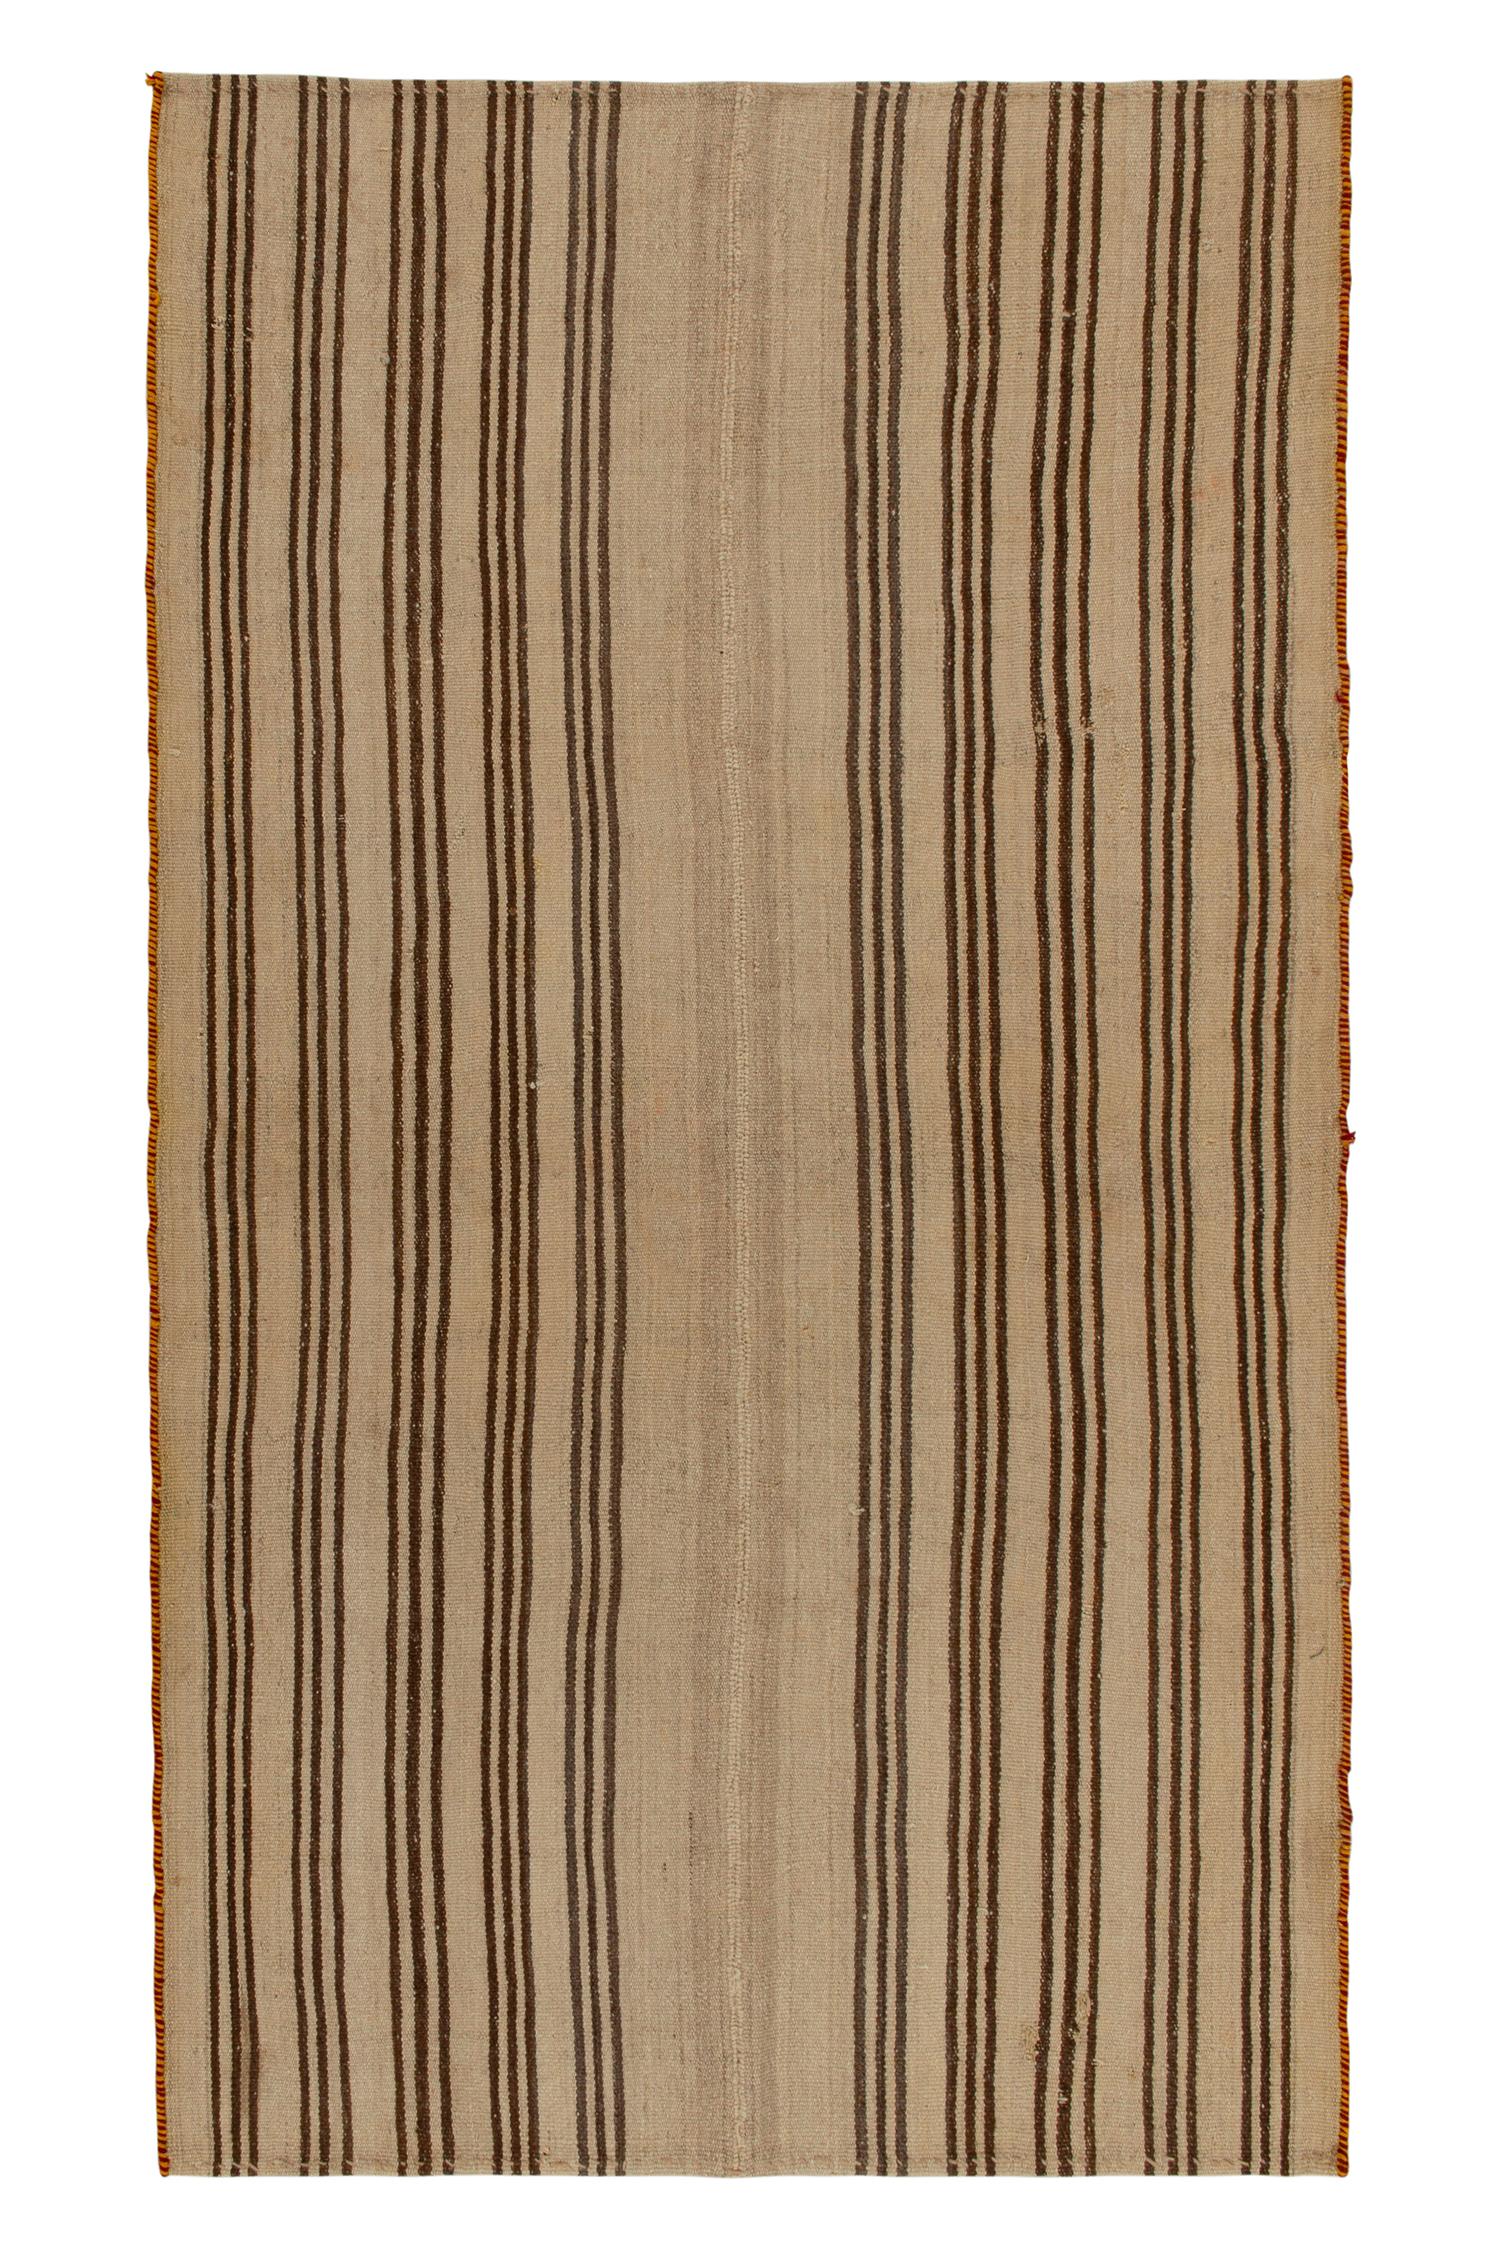 Tapis Kilim vintage à motifs de rayures beige-marron, tissé sur panneau, Rug & Kilim